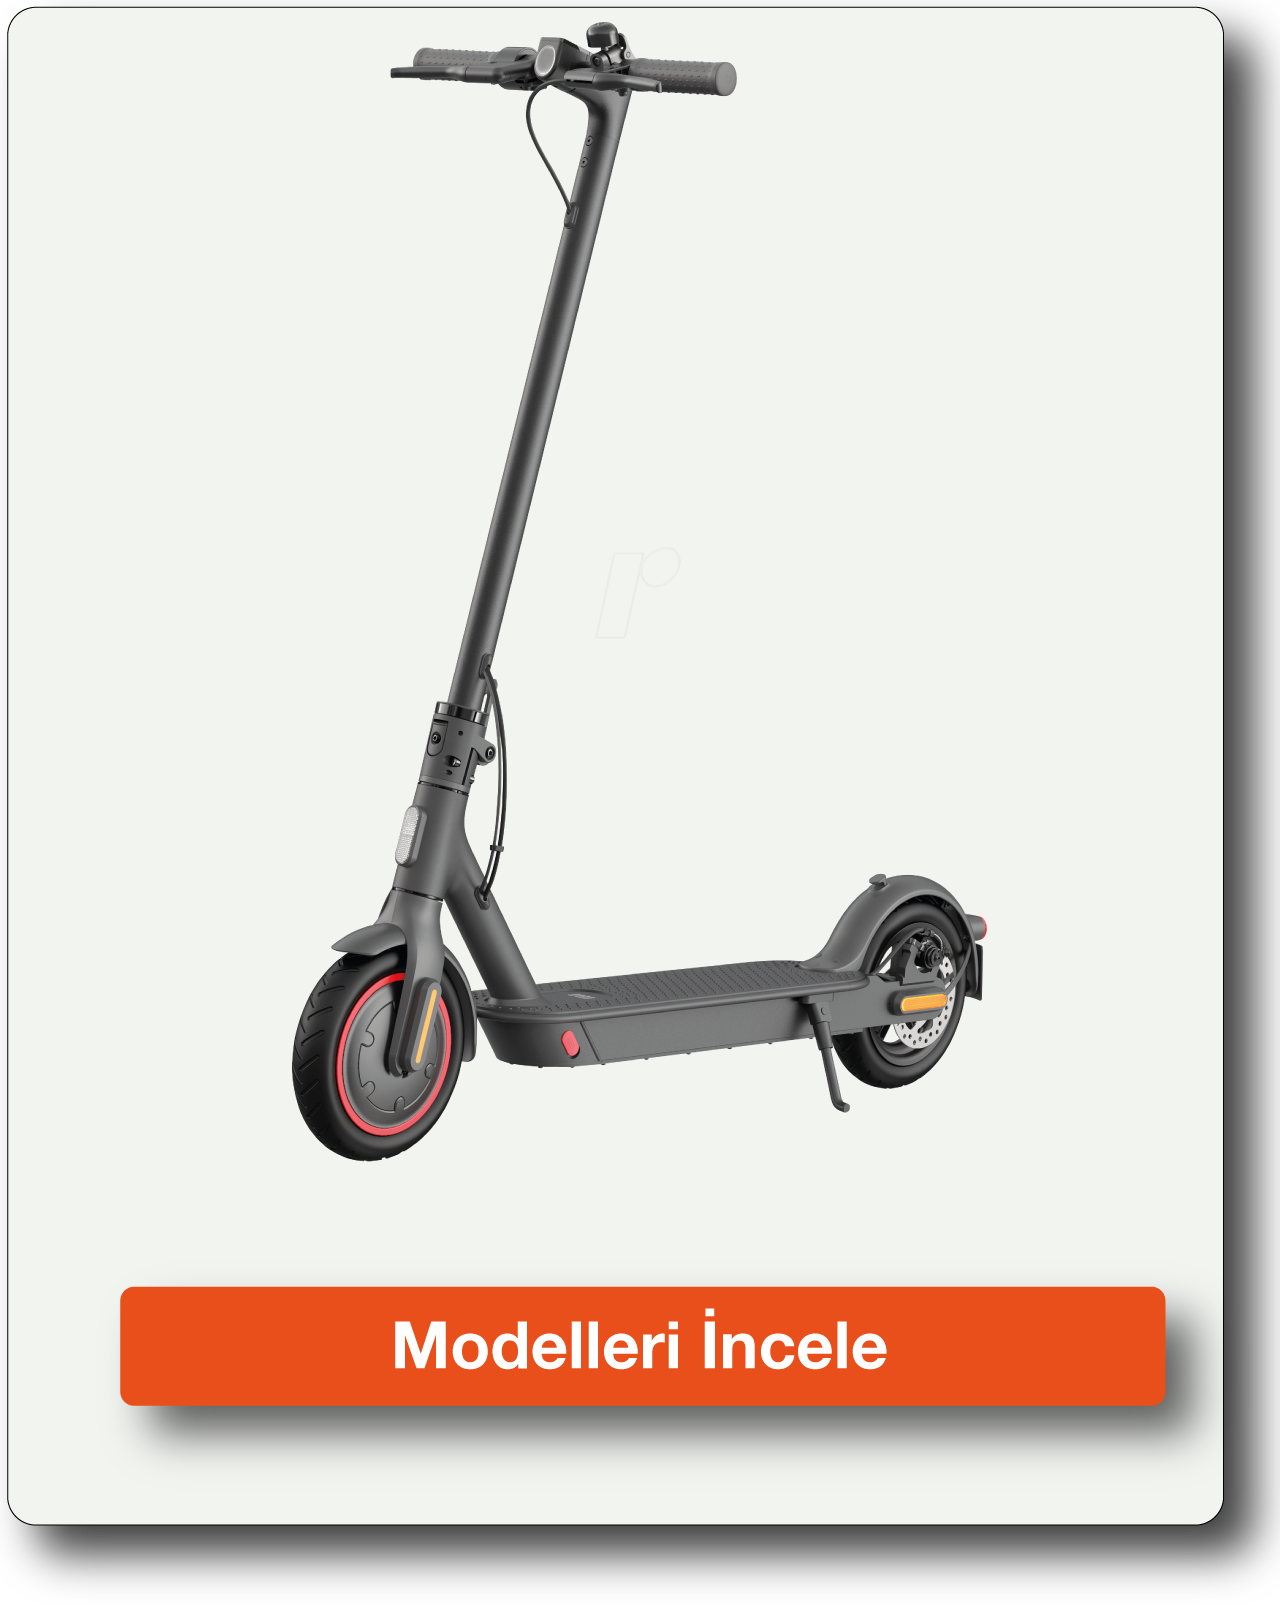 Elektrikli Scooter